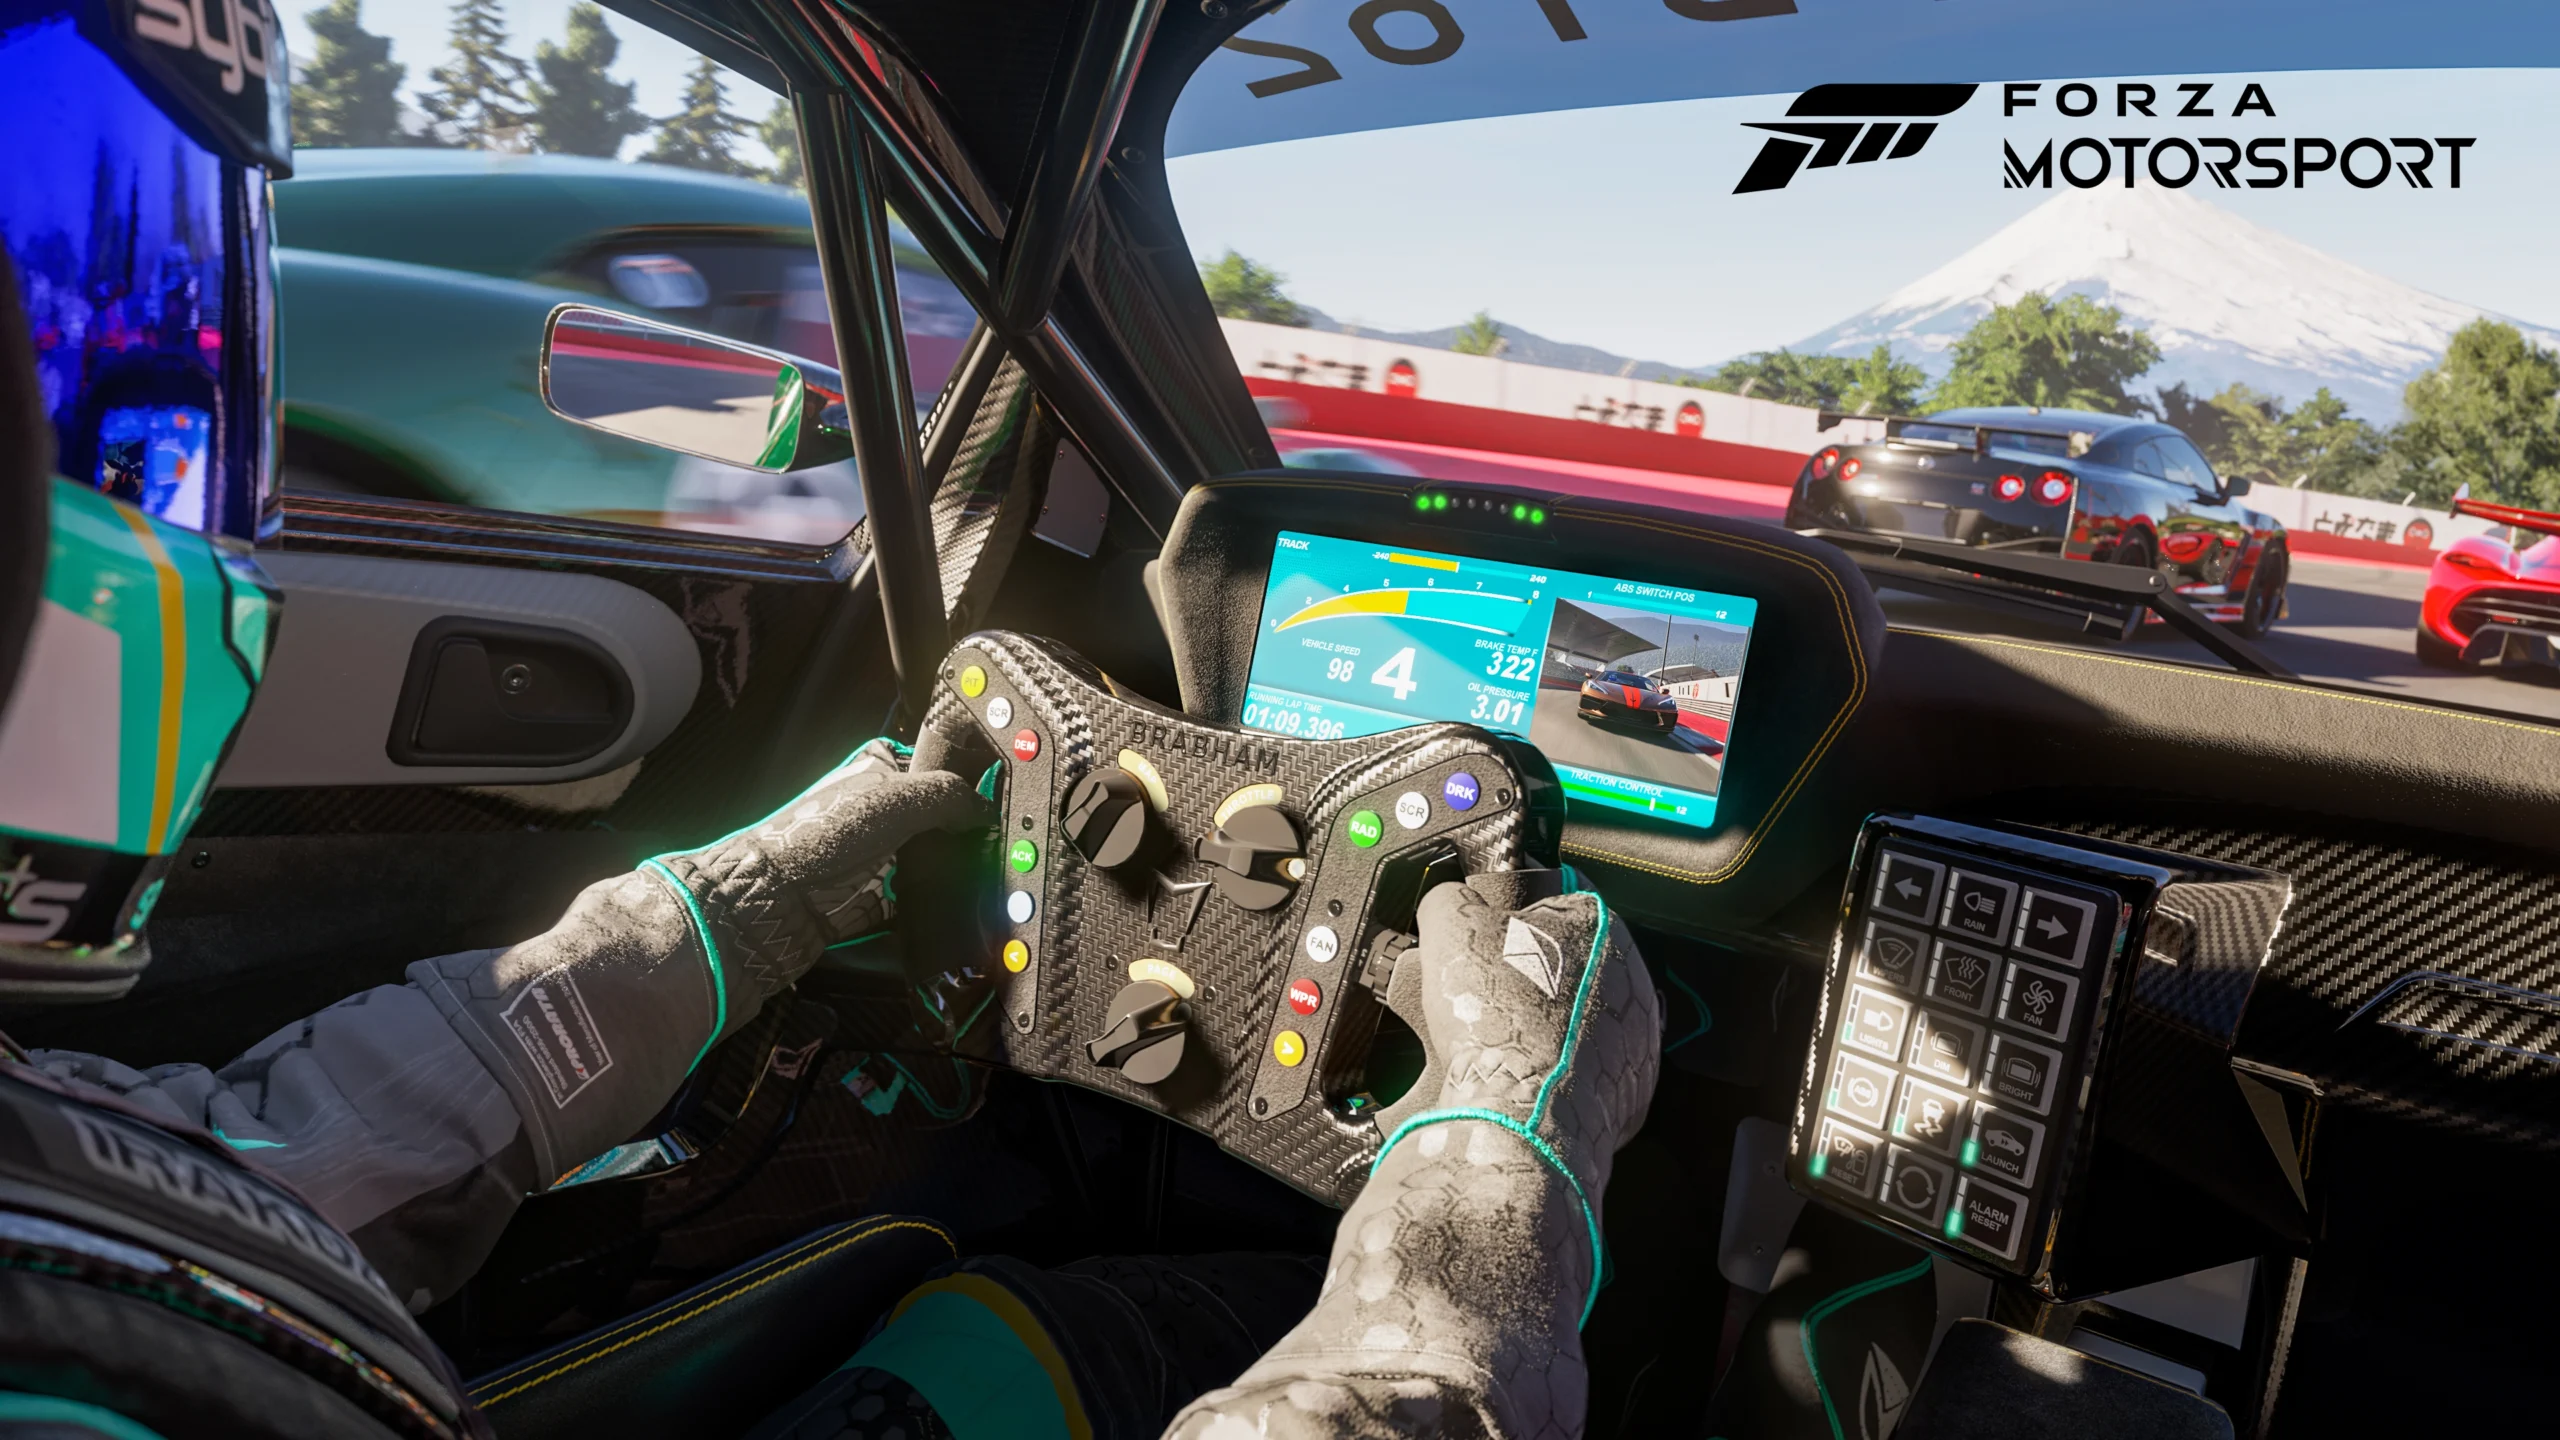 Forza Motorsport XboxGamesShowcase2022 PressKit 10 16x9 WM 76568d3fa79d335b8293